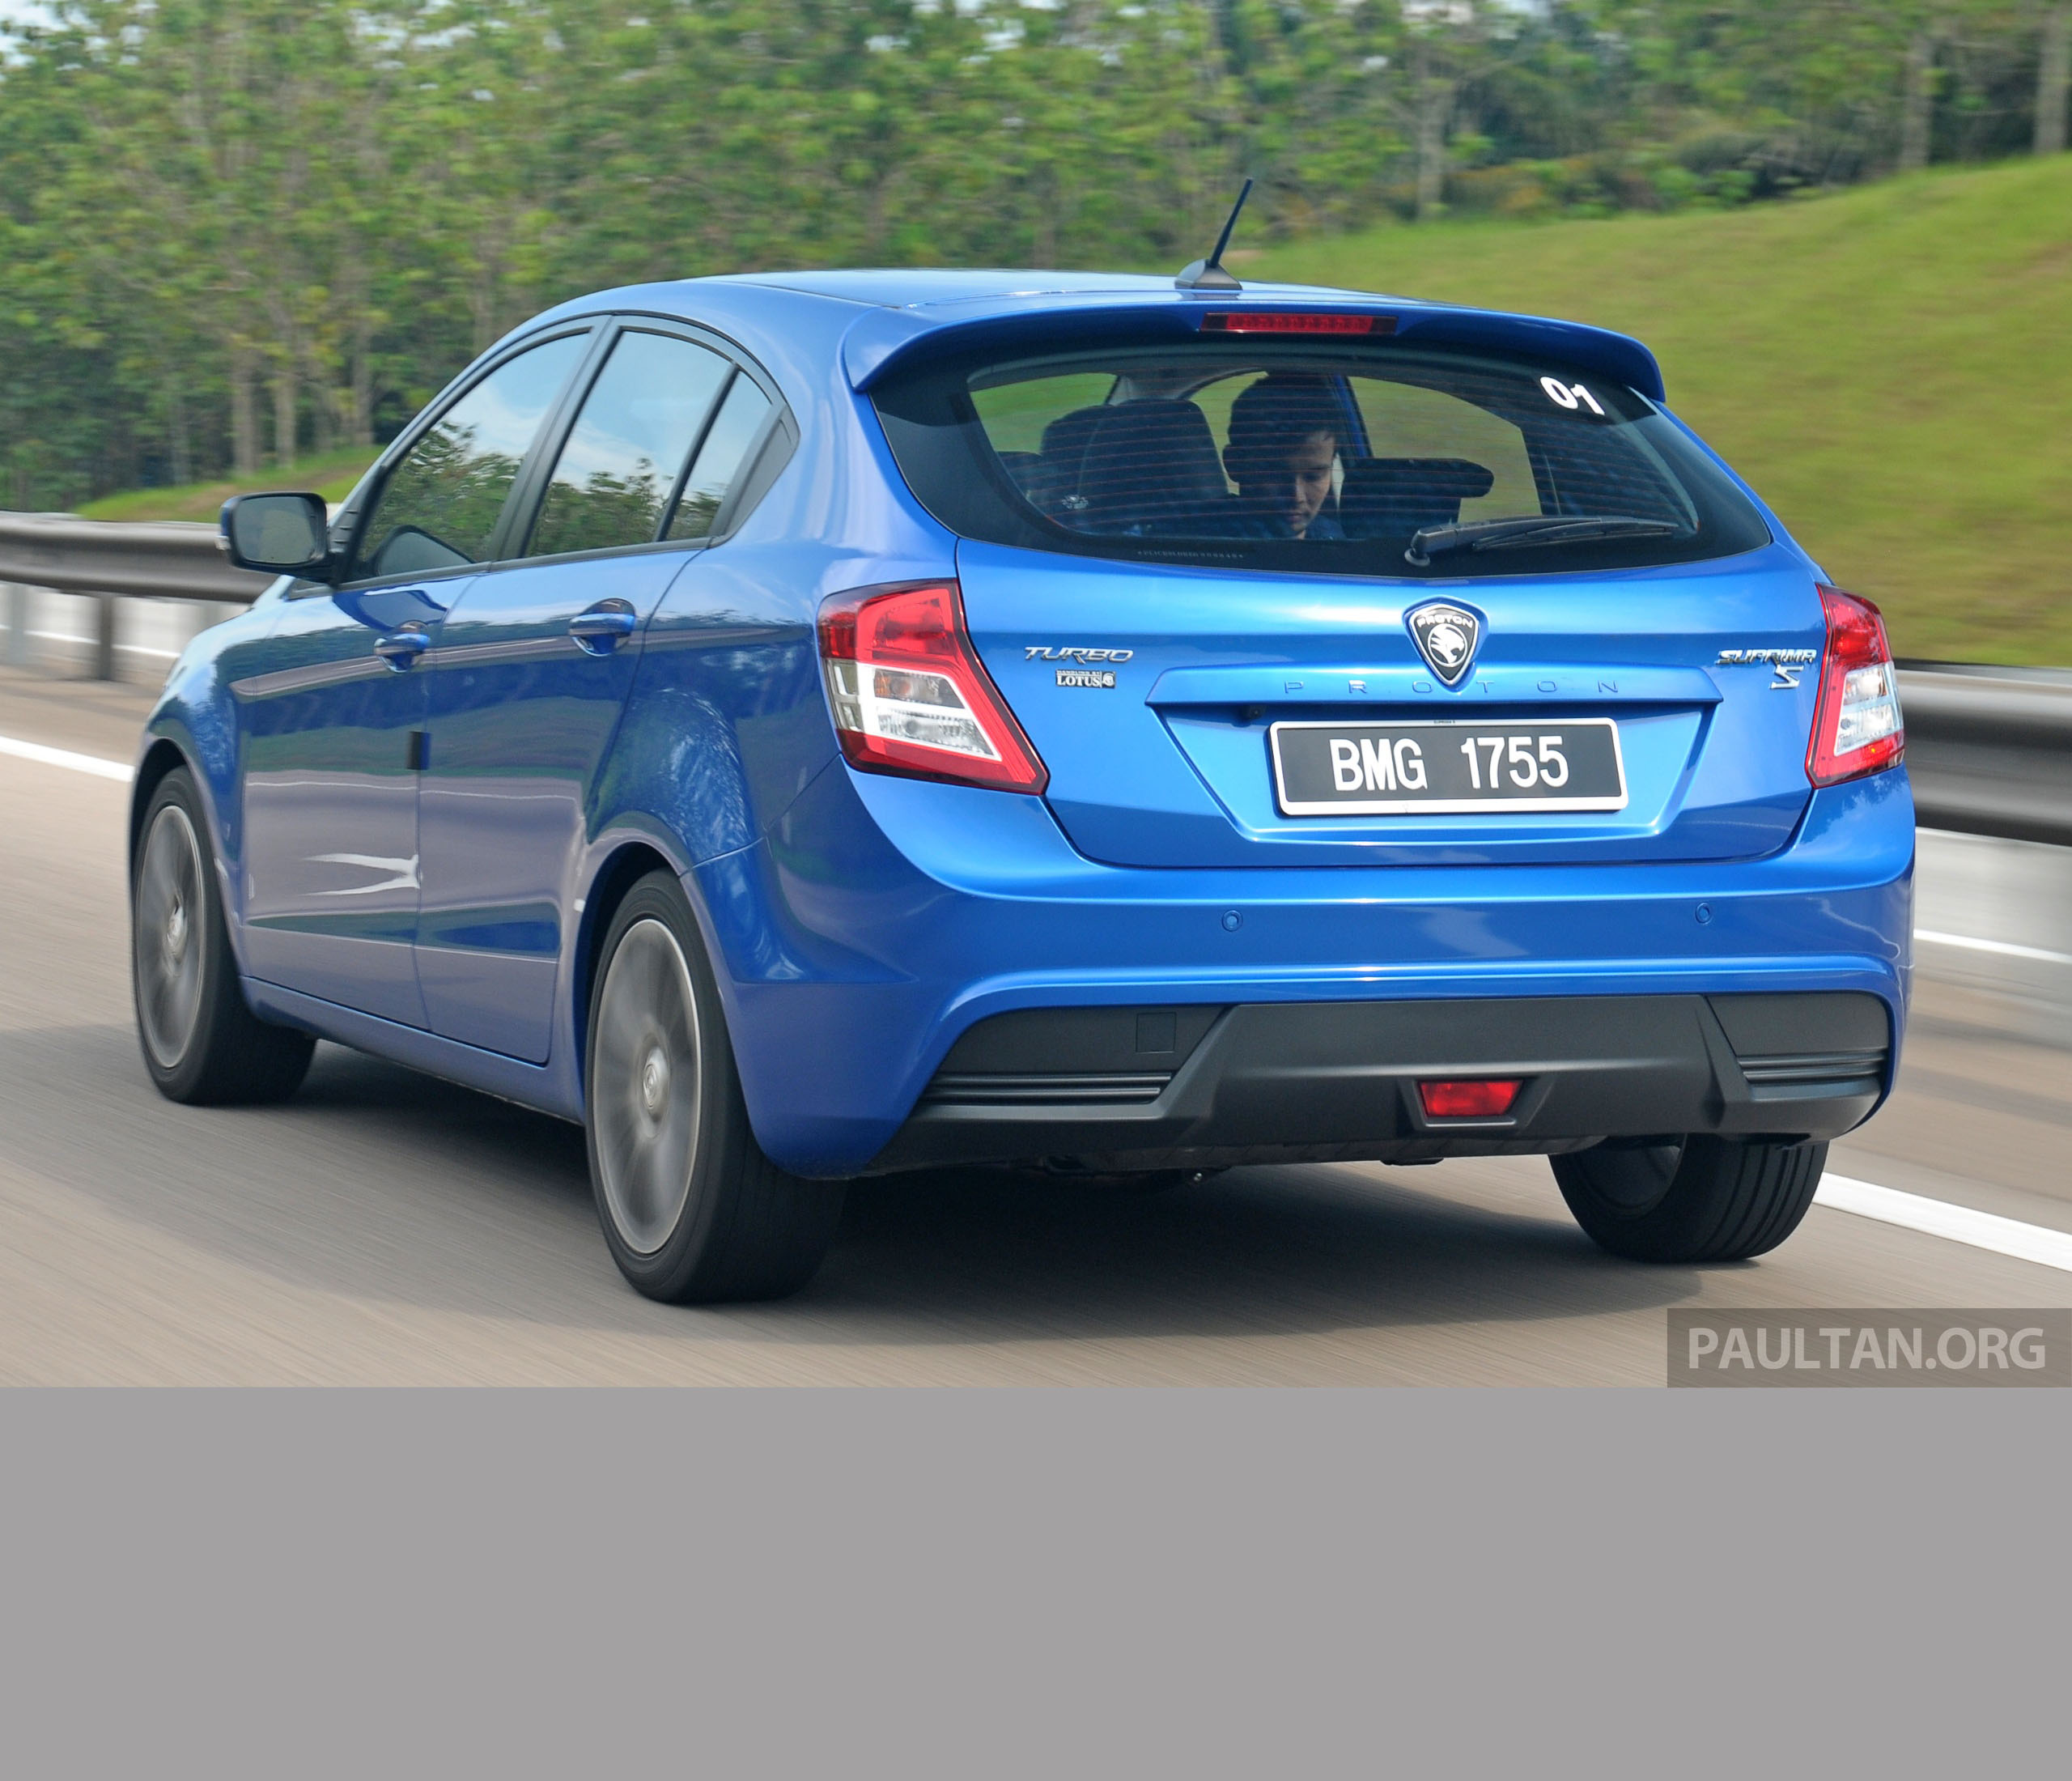 DRIVEN: Proton Suprima S review - 1.6 Turbo Premium tested